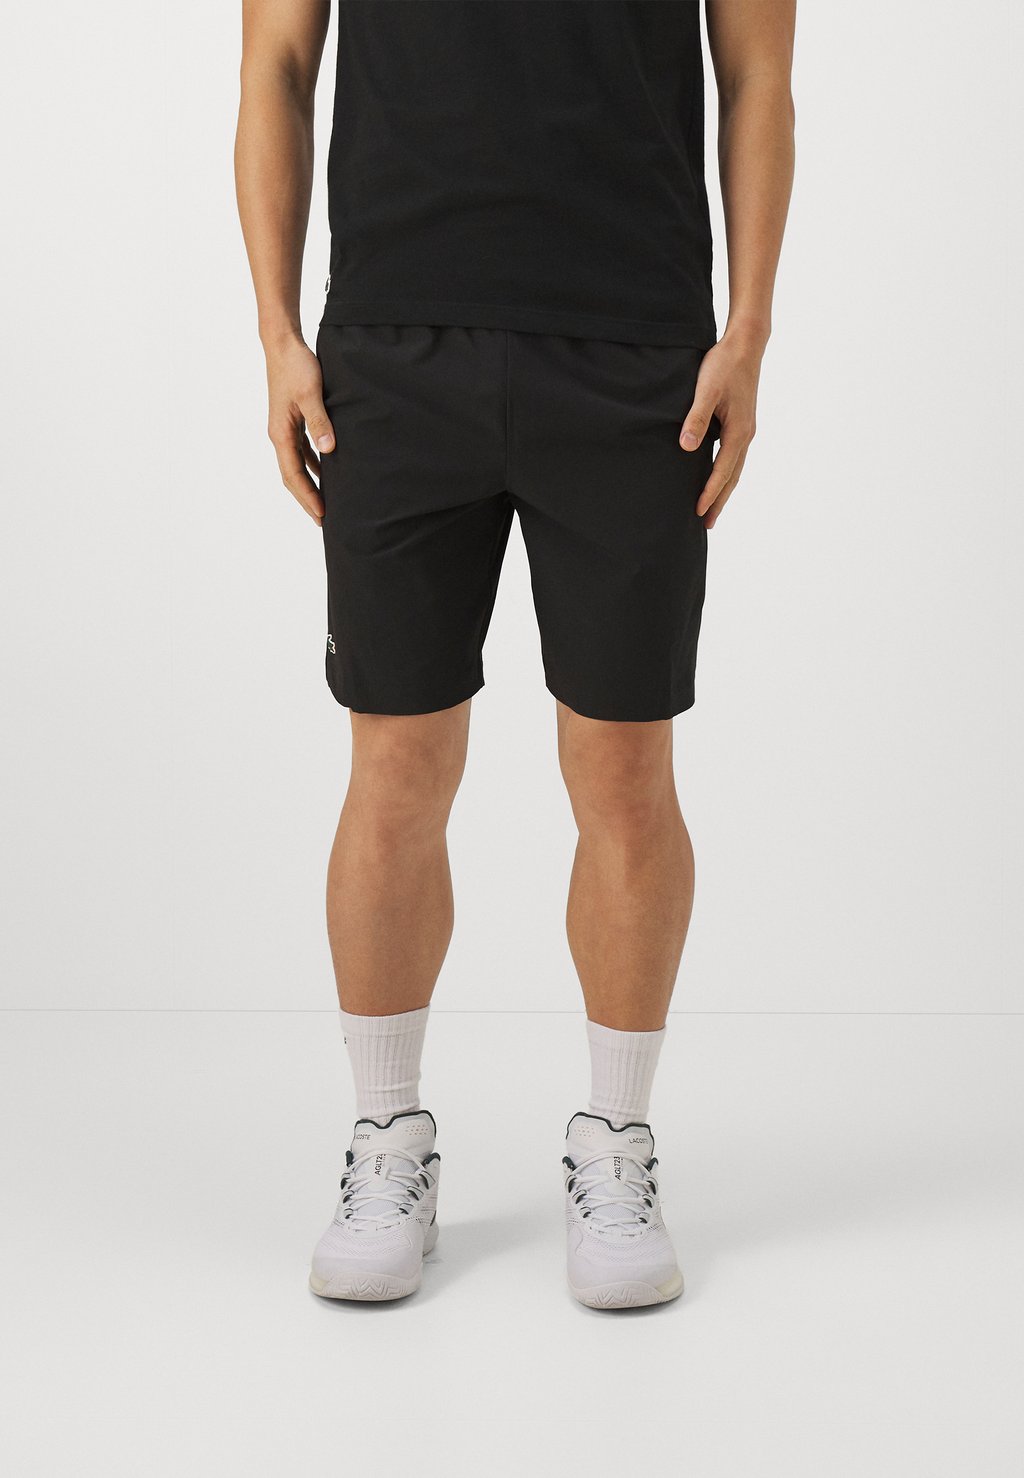 Спортивные шорты Sports Shorts Lacoste, черный спортивные шорты sports shorts lacoste цвет navy blue